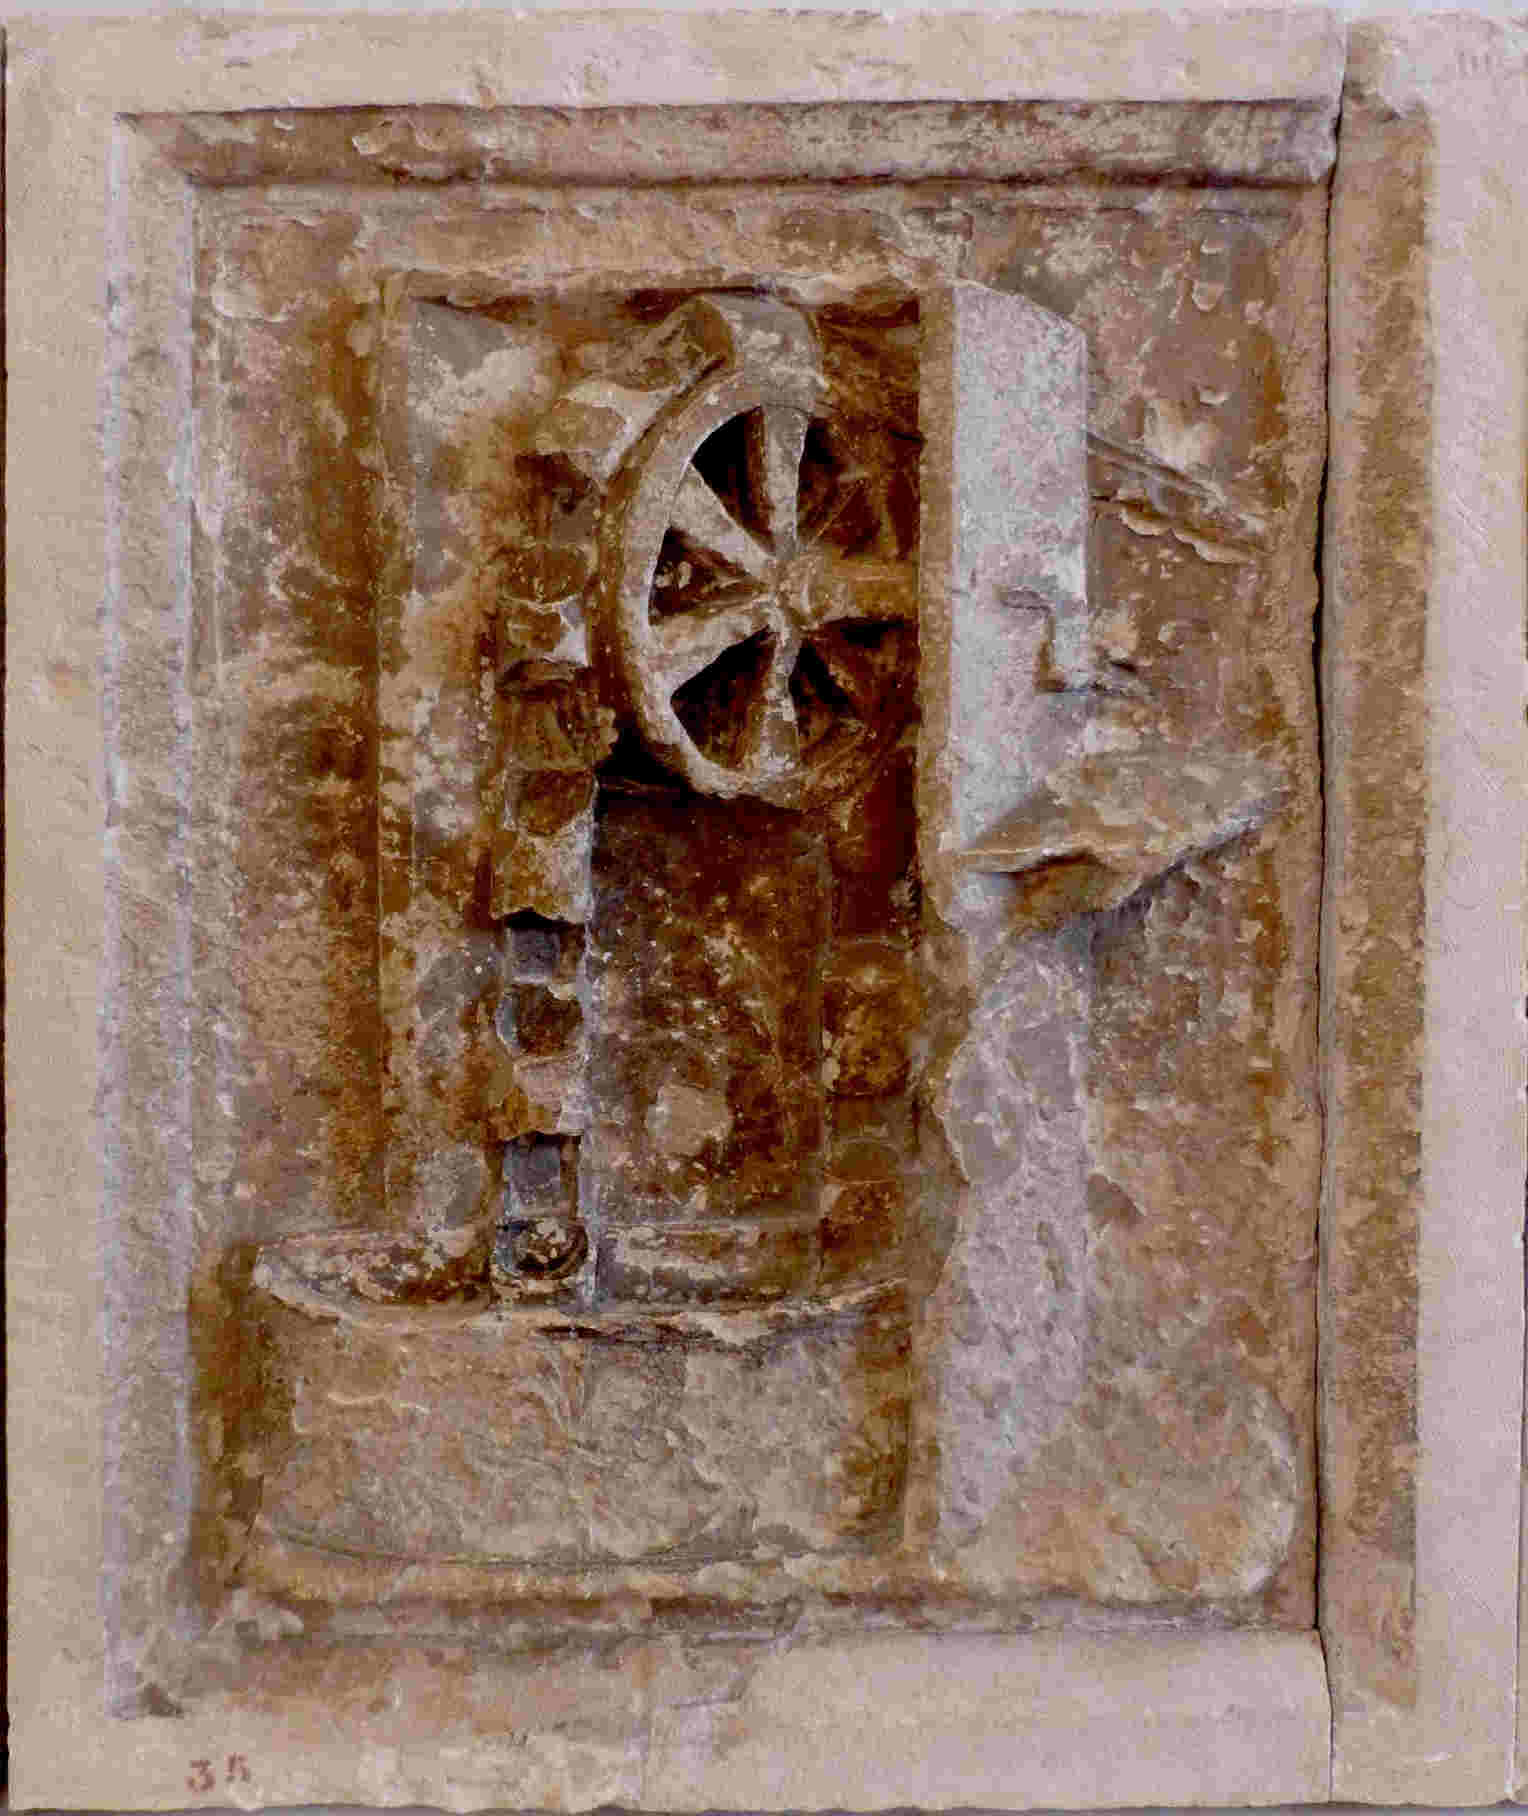 Máquinas de Urbino: La tecnología conservada en piedra